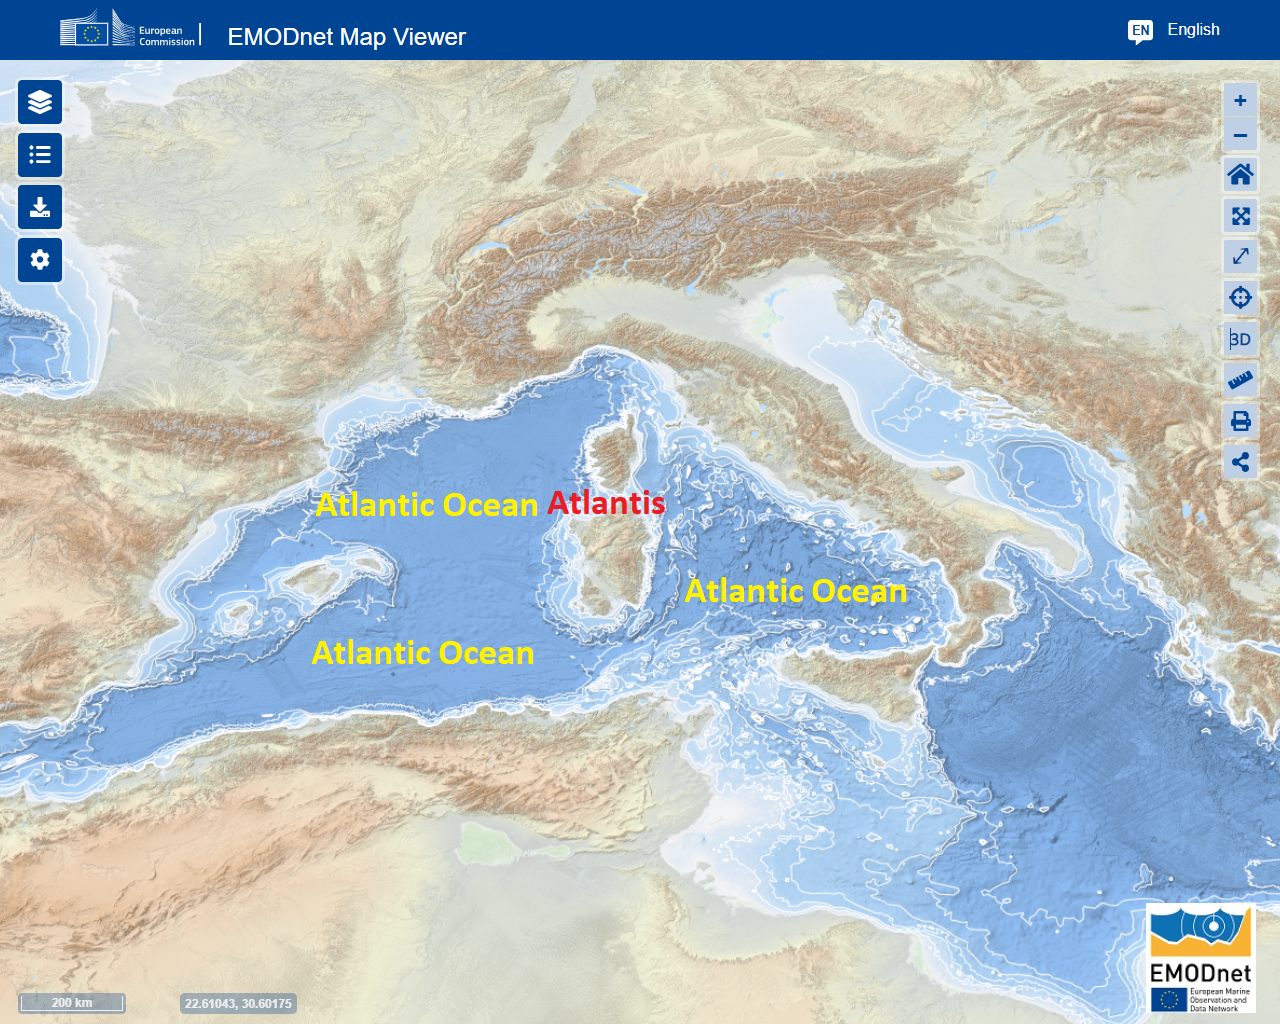 L'Atlantide dans l'océan Atlantique mésolithique, aujourd'hui appelée mer Méditerranée.